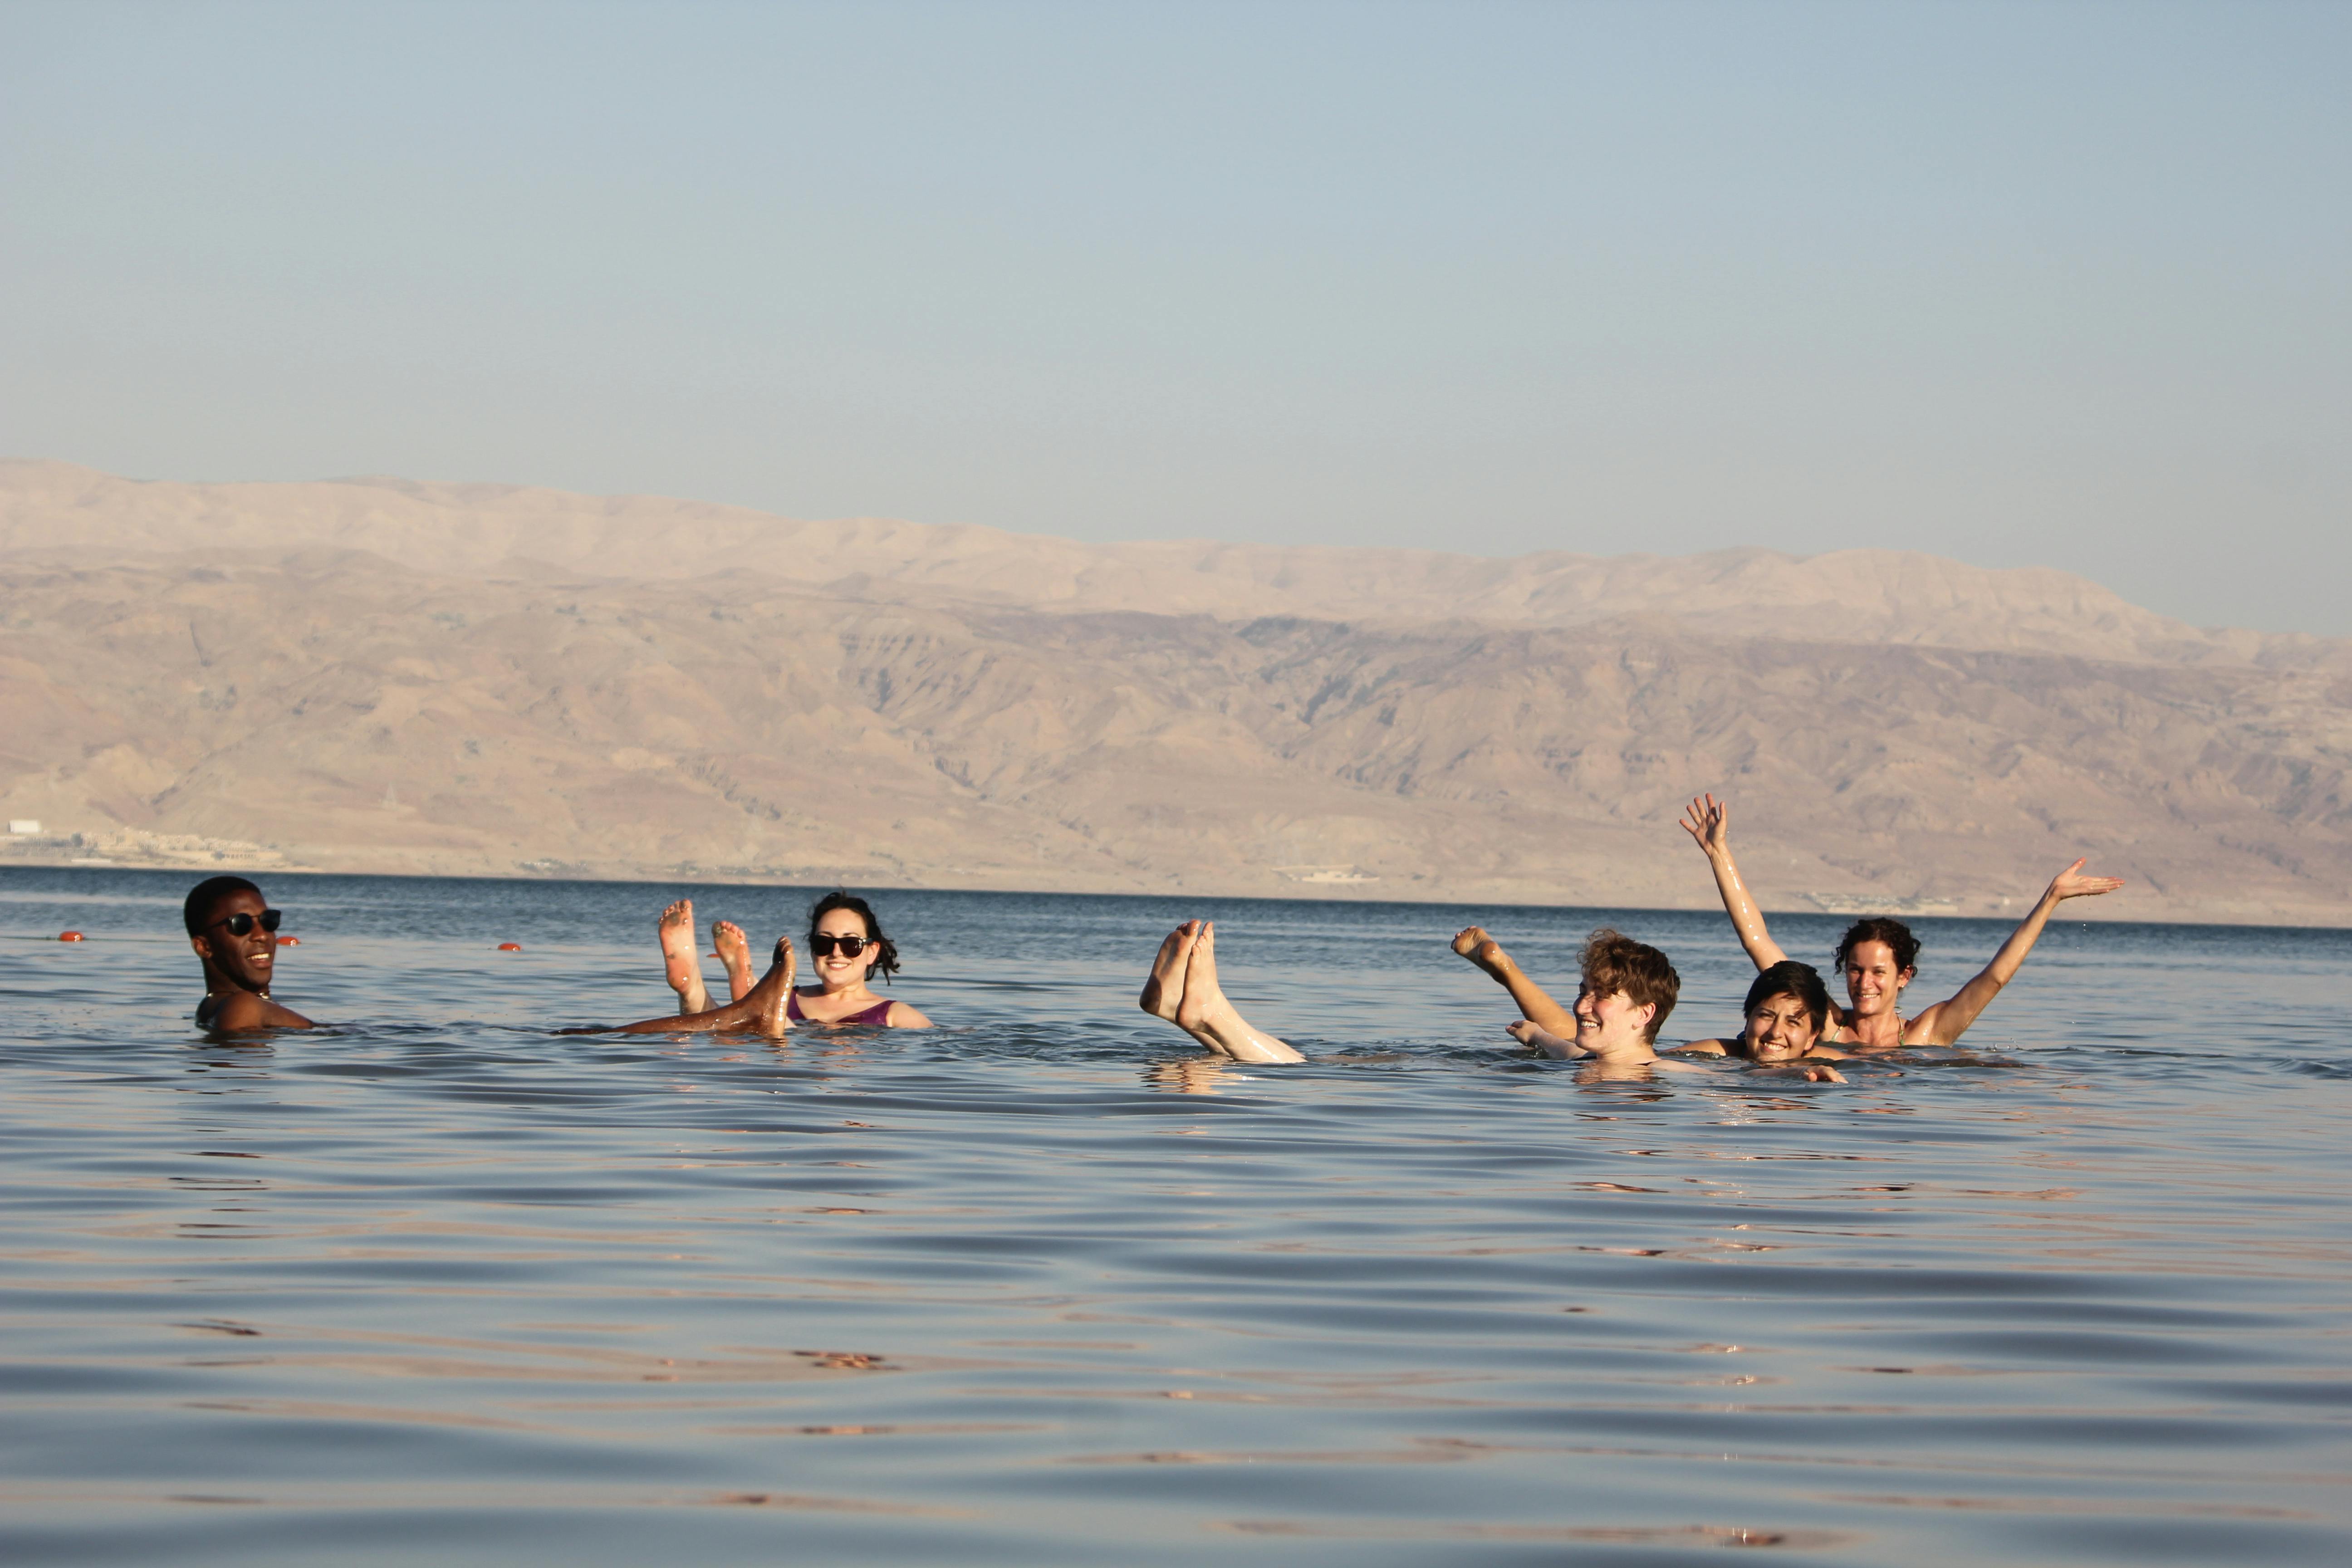 Masada, Ein Gedi and Dead Sea tour from Tel Aviv